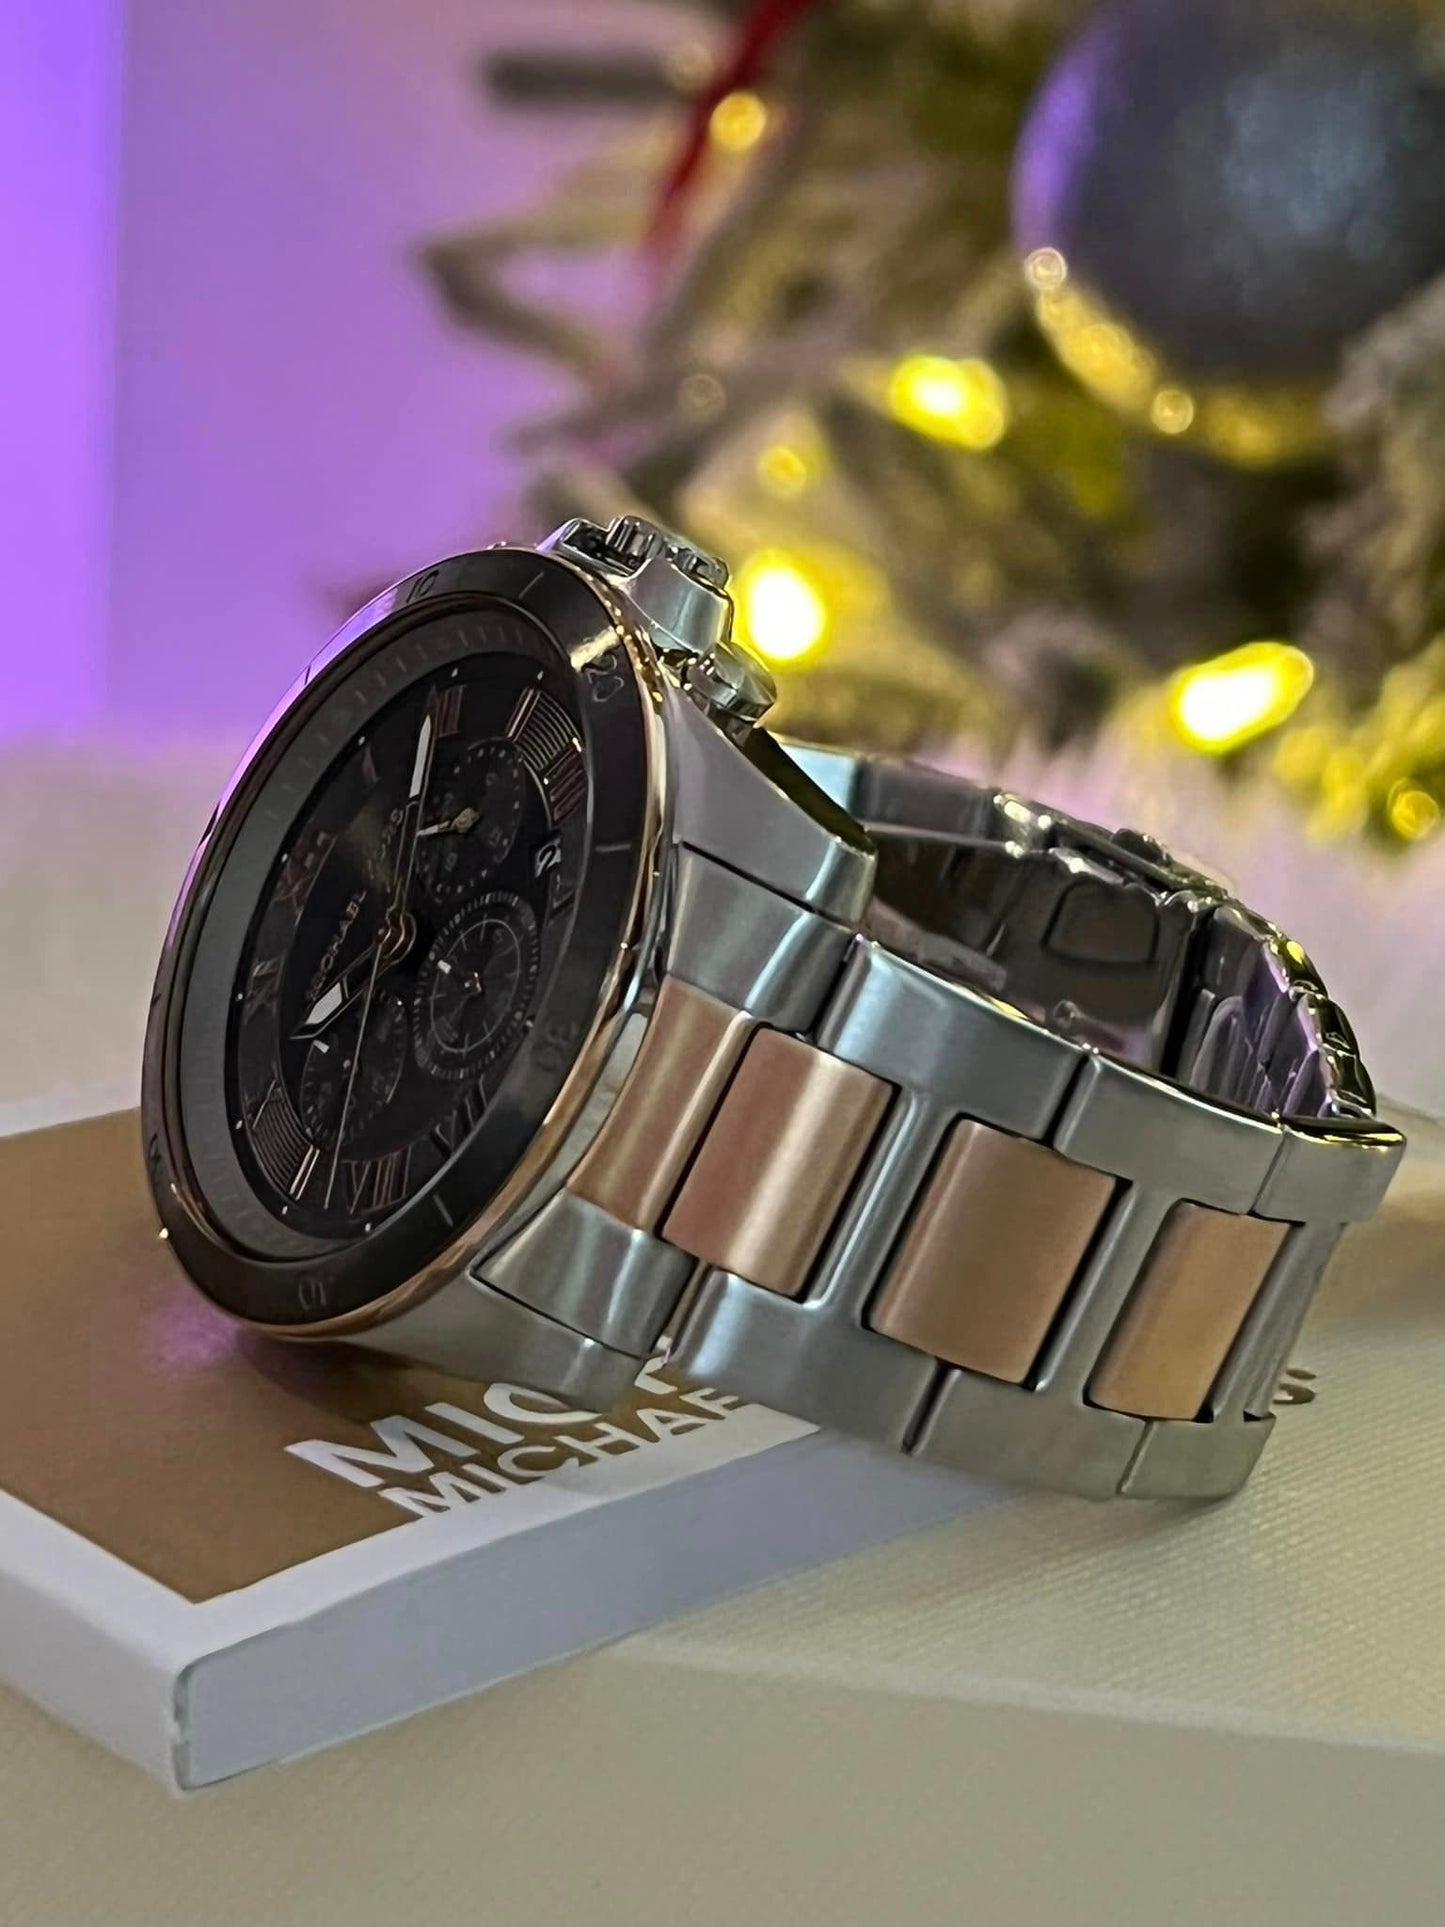 Michael Kors Men’s Oversized Alek Two-Tone Watch